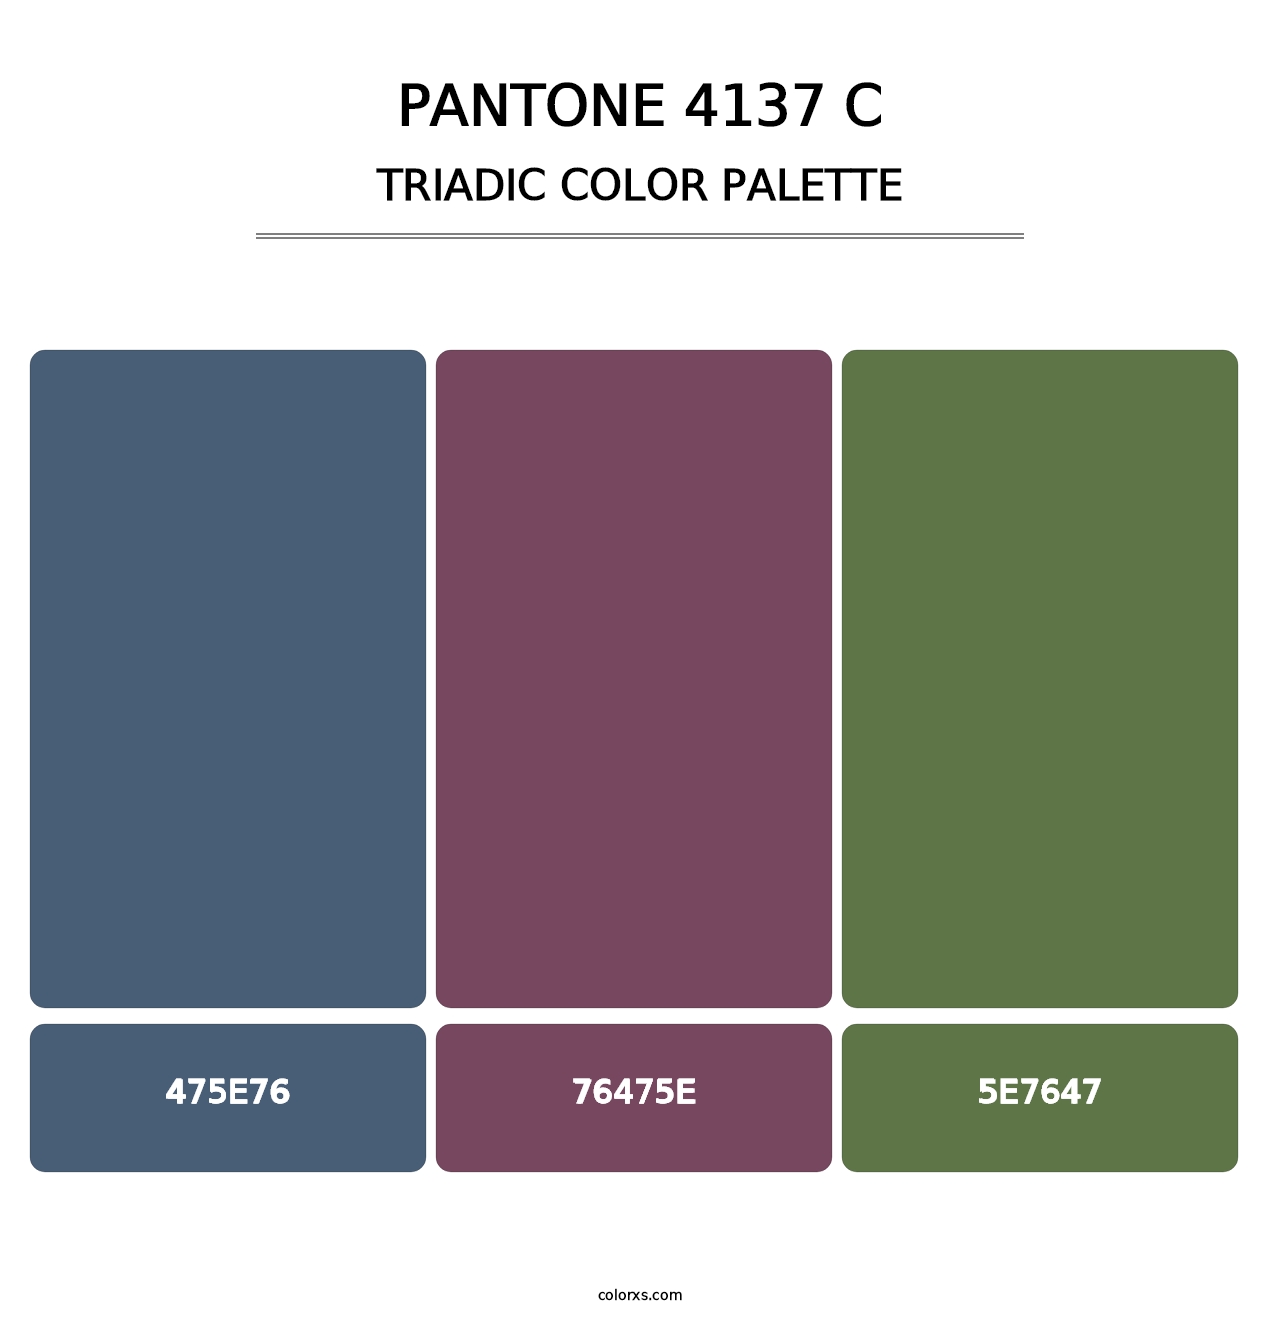 PANTONE 4137 C - Triadic Color Palette